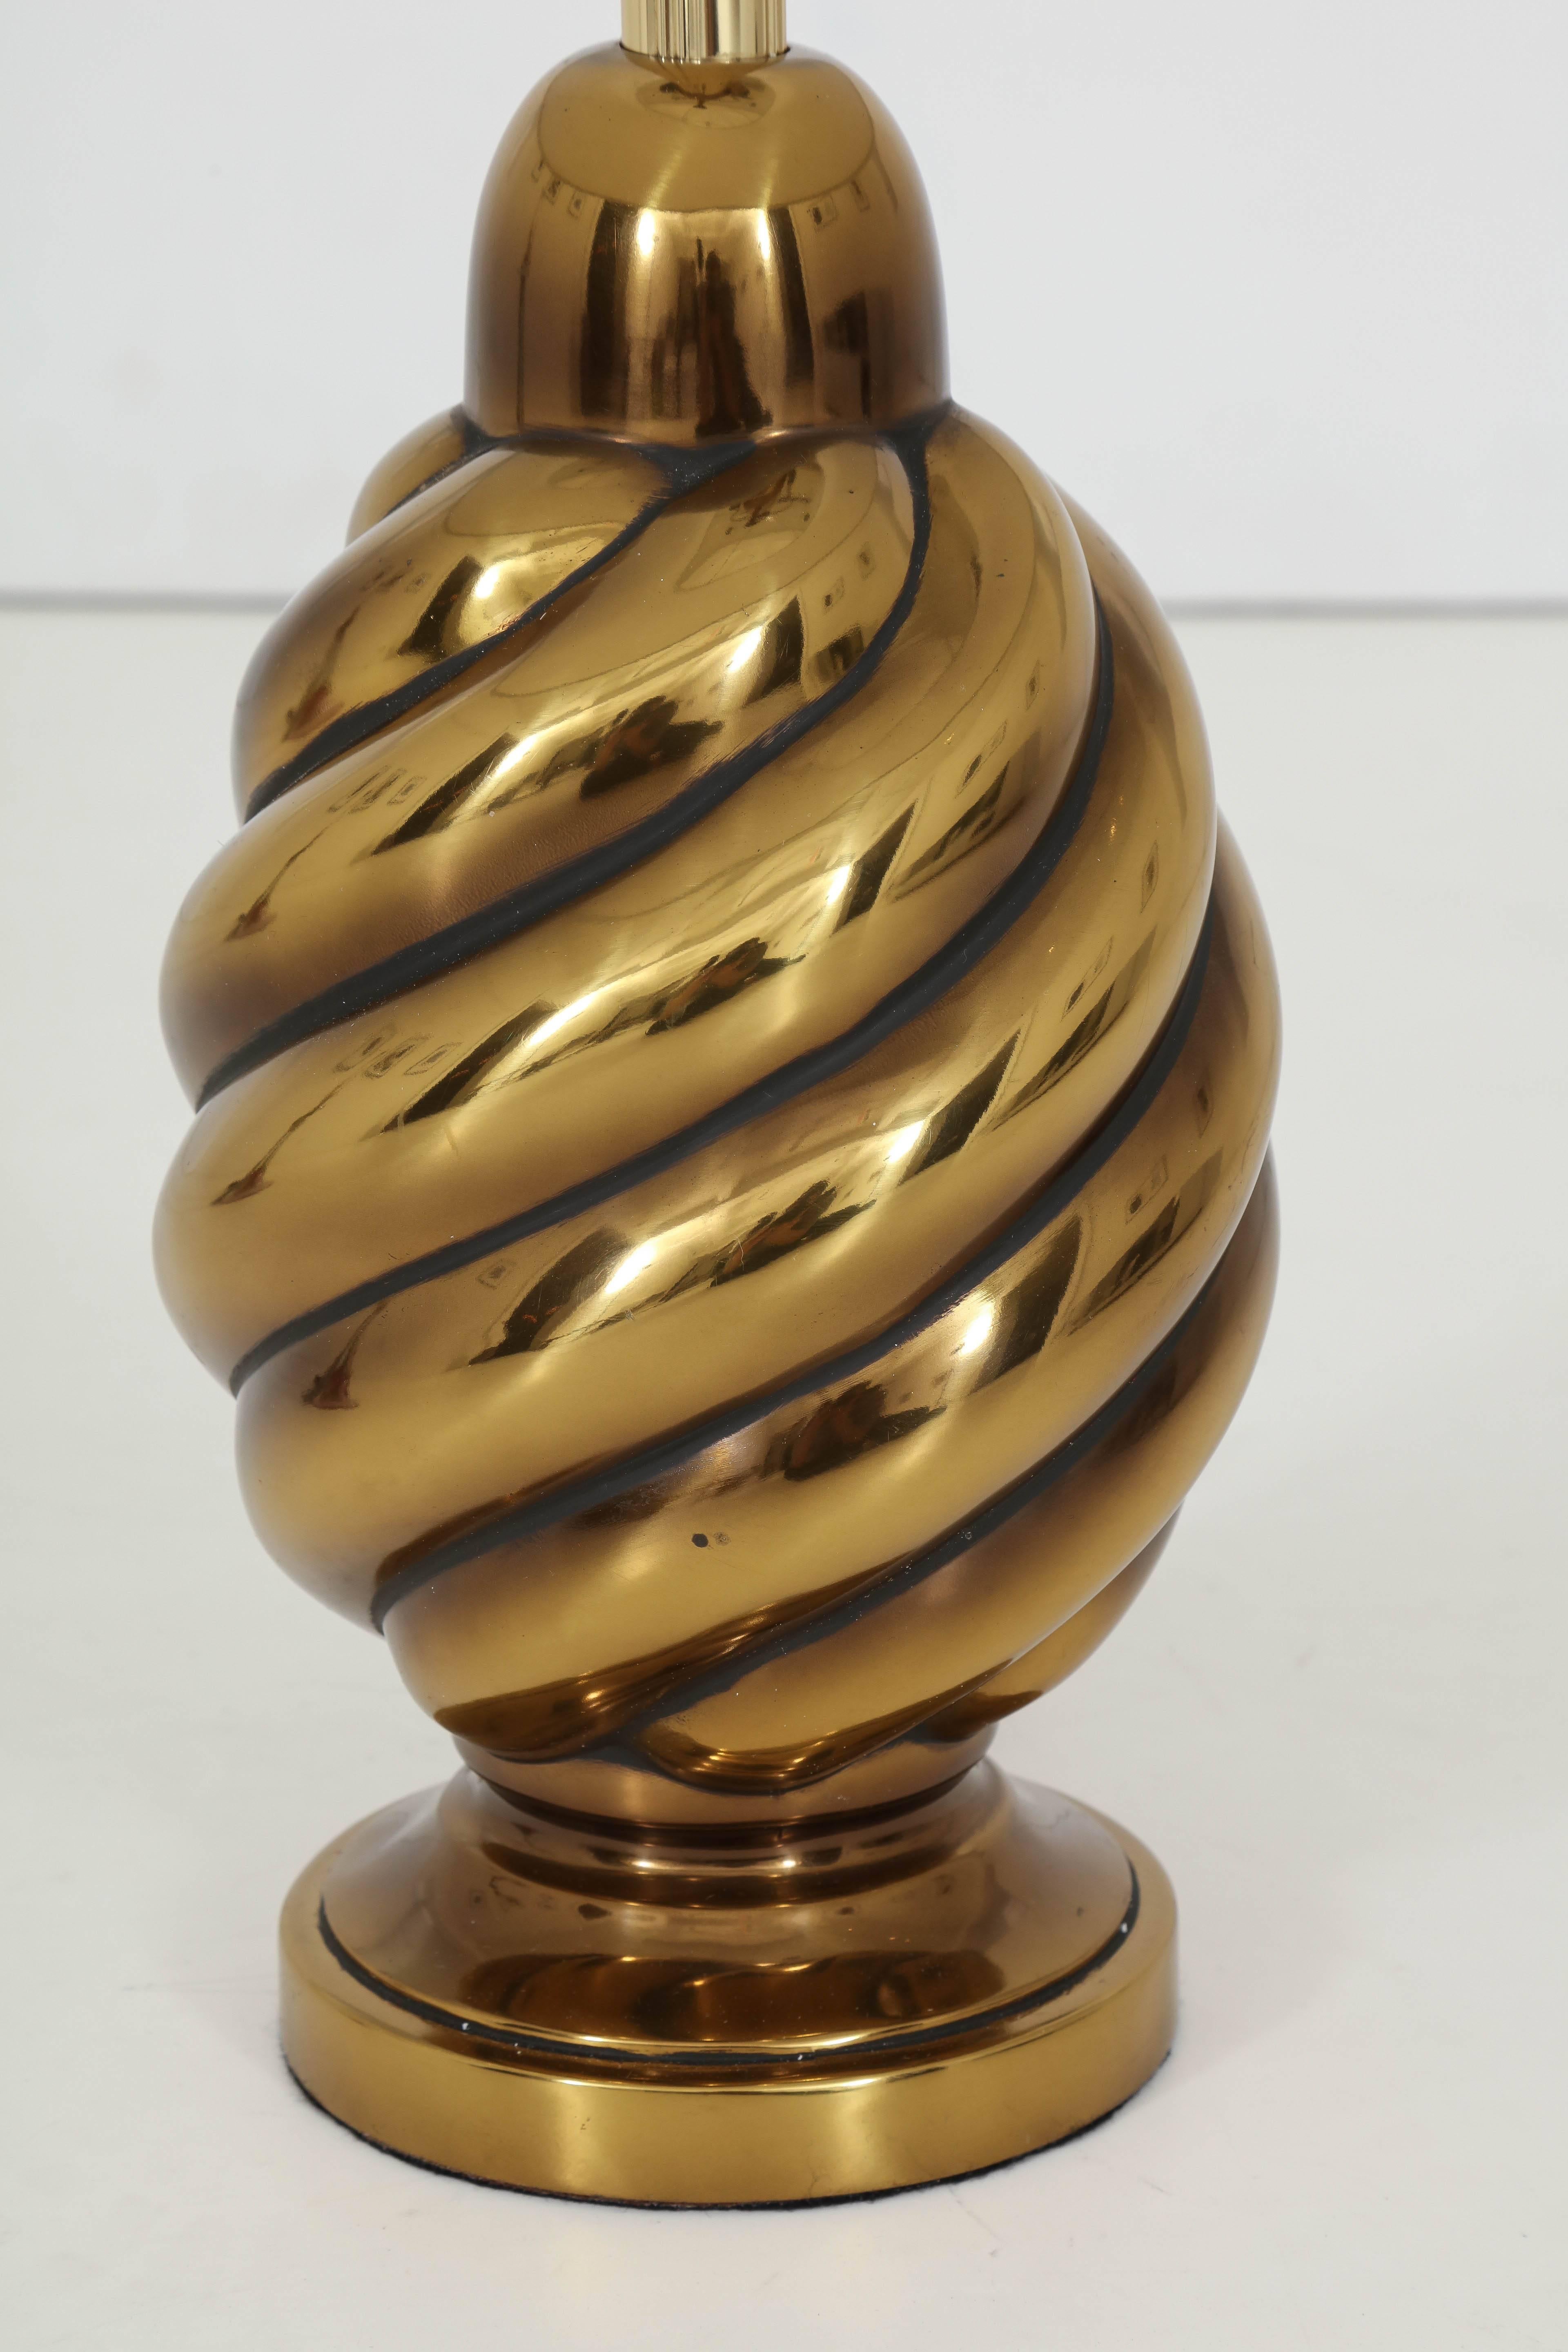 Paire de lampes Mid-Century en forme de spirale avec une finition en laiton vieilli. Les lampes ont été recâblées pour être utilisées aux États-Unis avec des cordons en soie dorée et des douilles en laiton. Les abat-jour ne sont pas inclus. Westwood